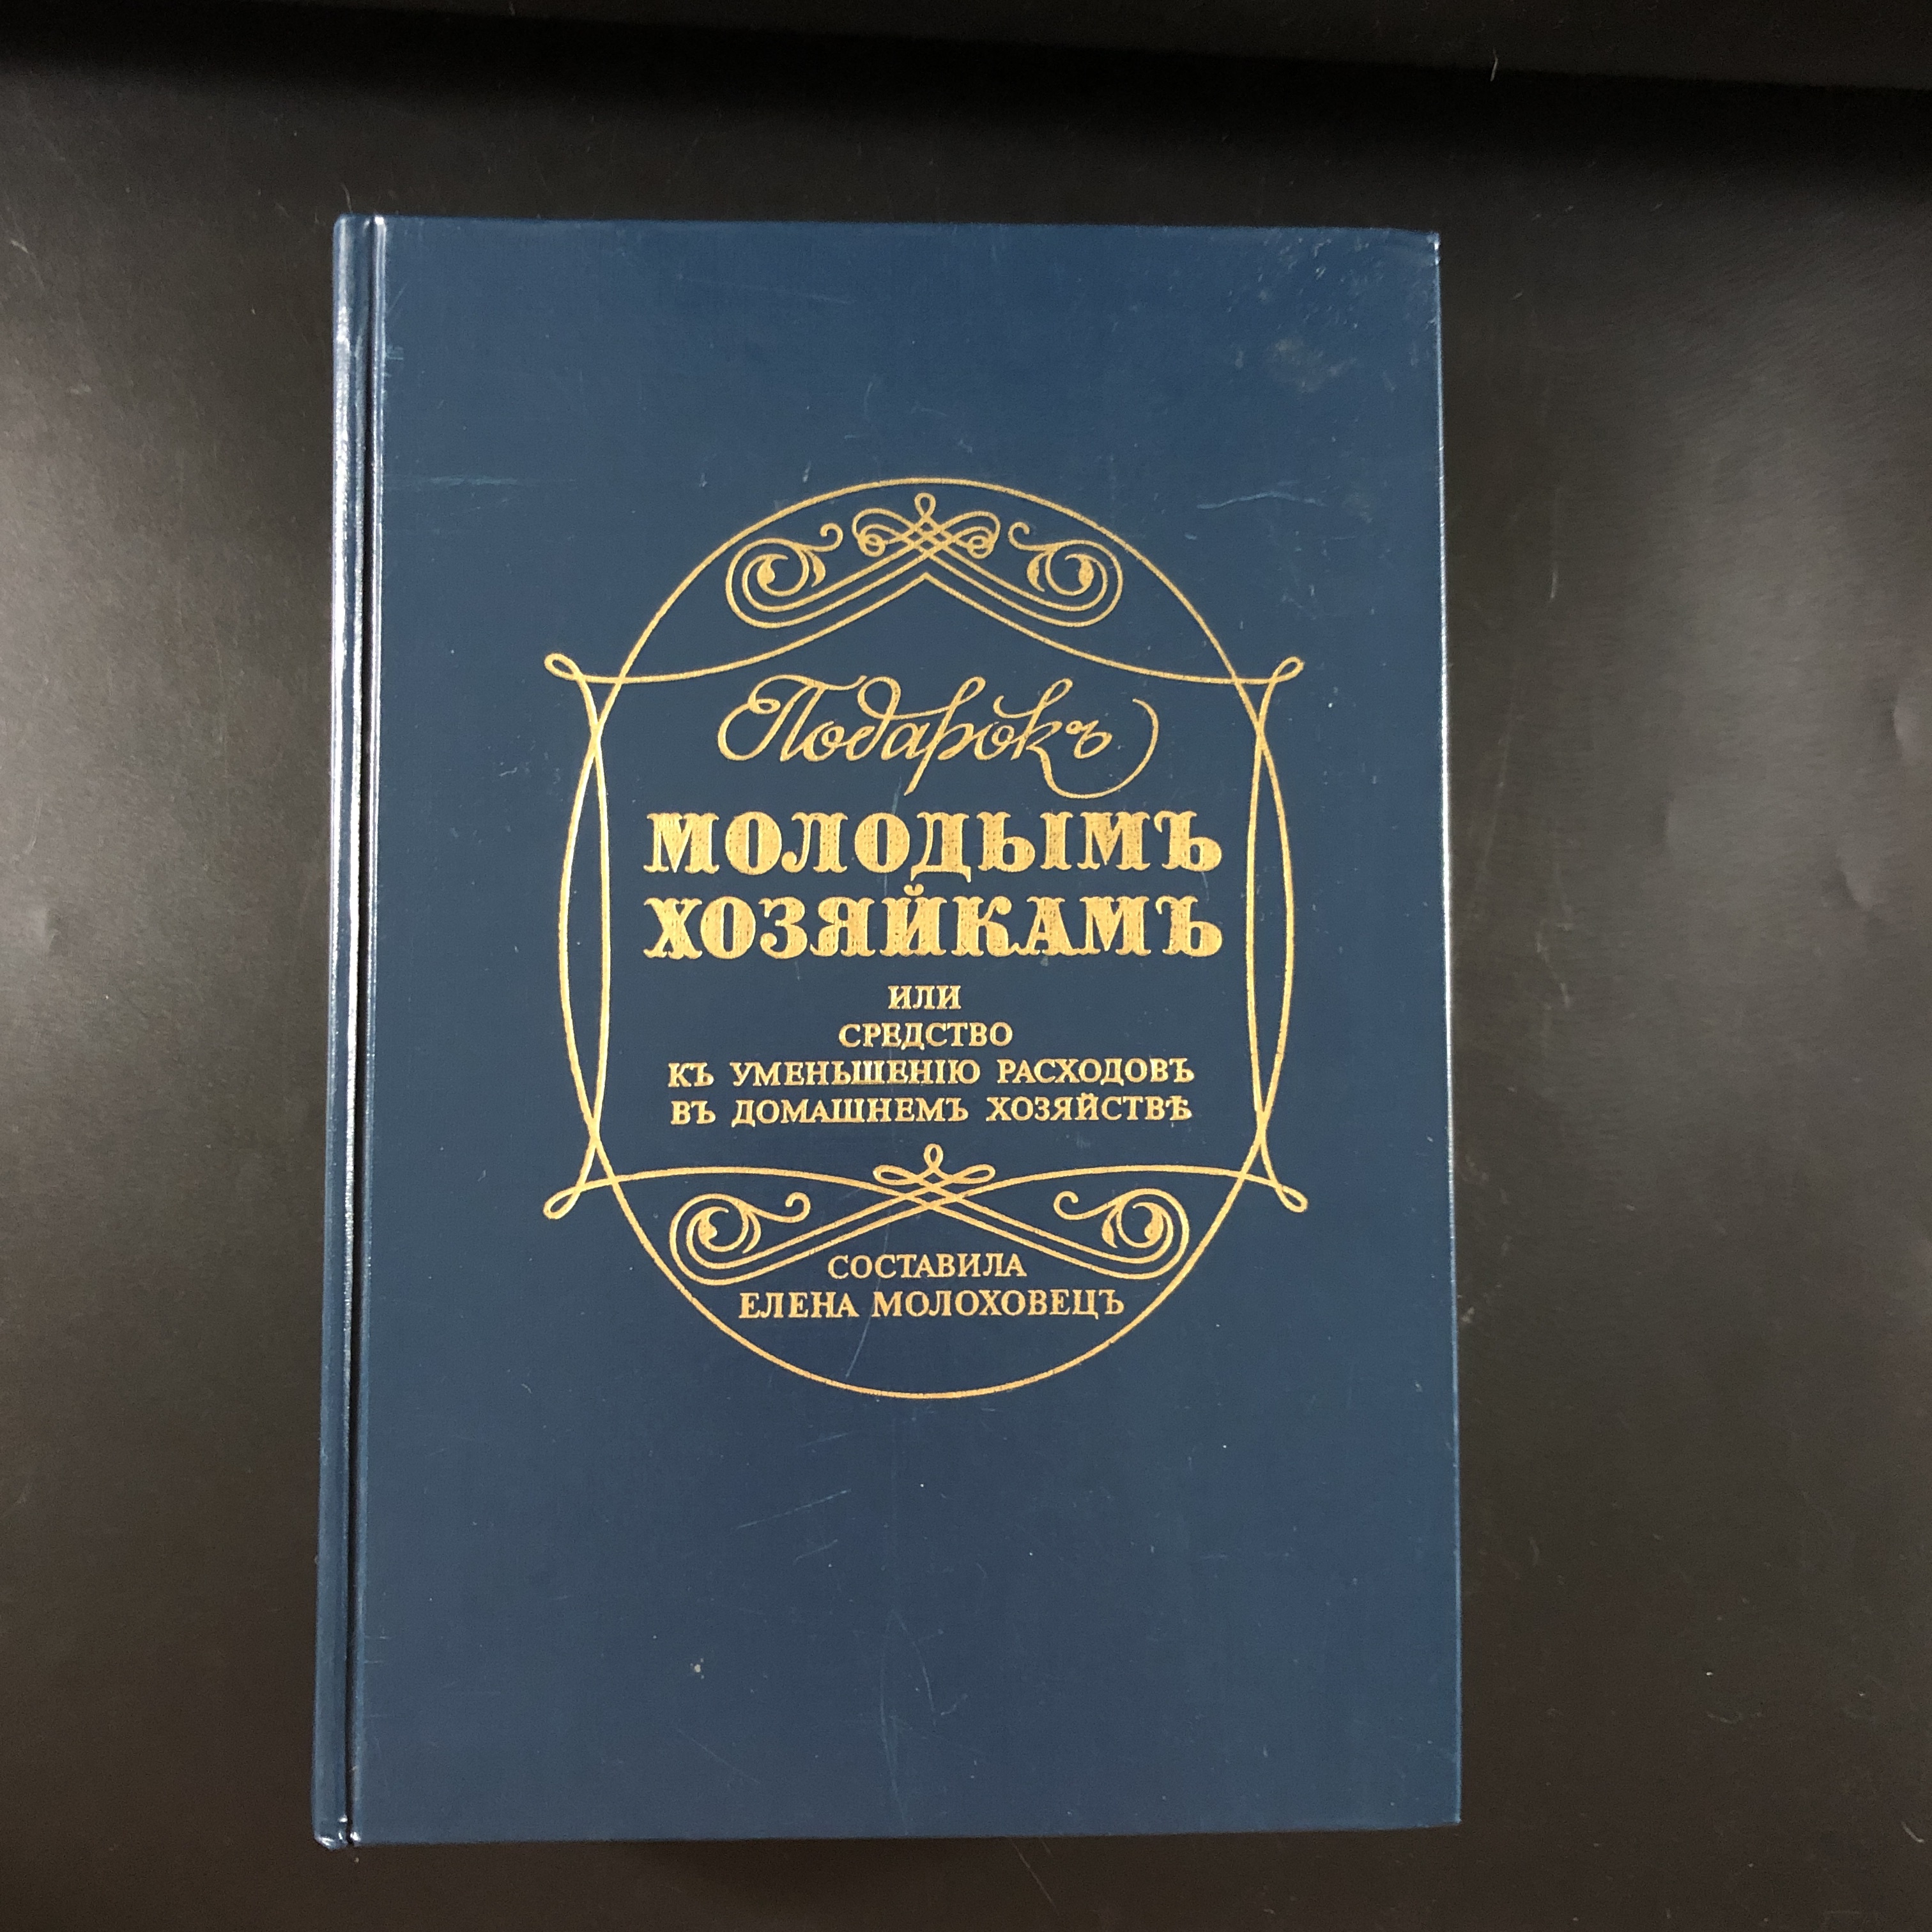 Книга рецептов елены молоховец. Подарок молодым хозяйкам 1901.